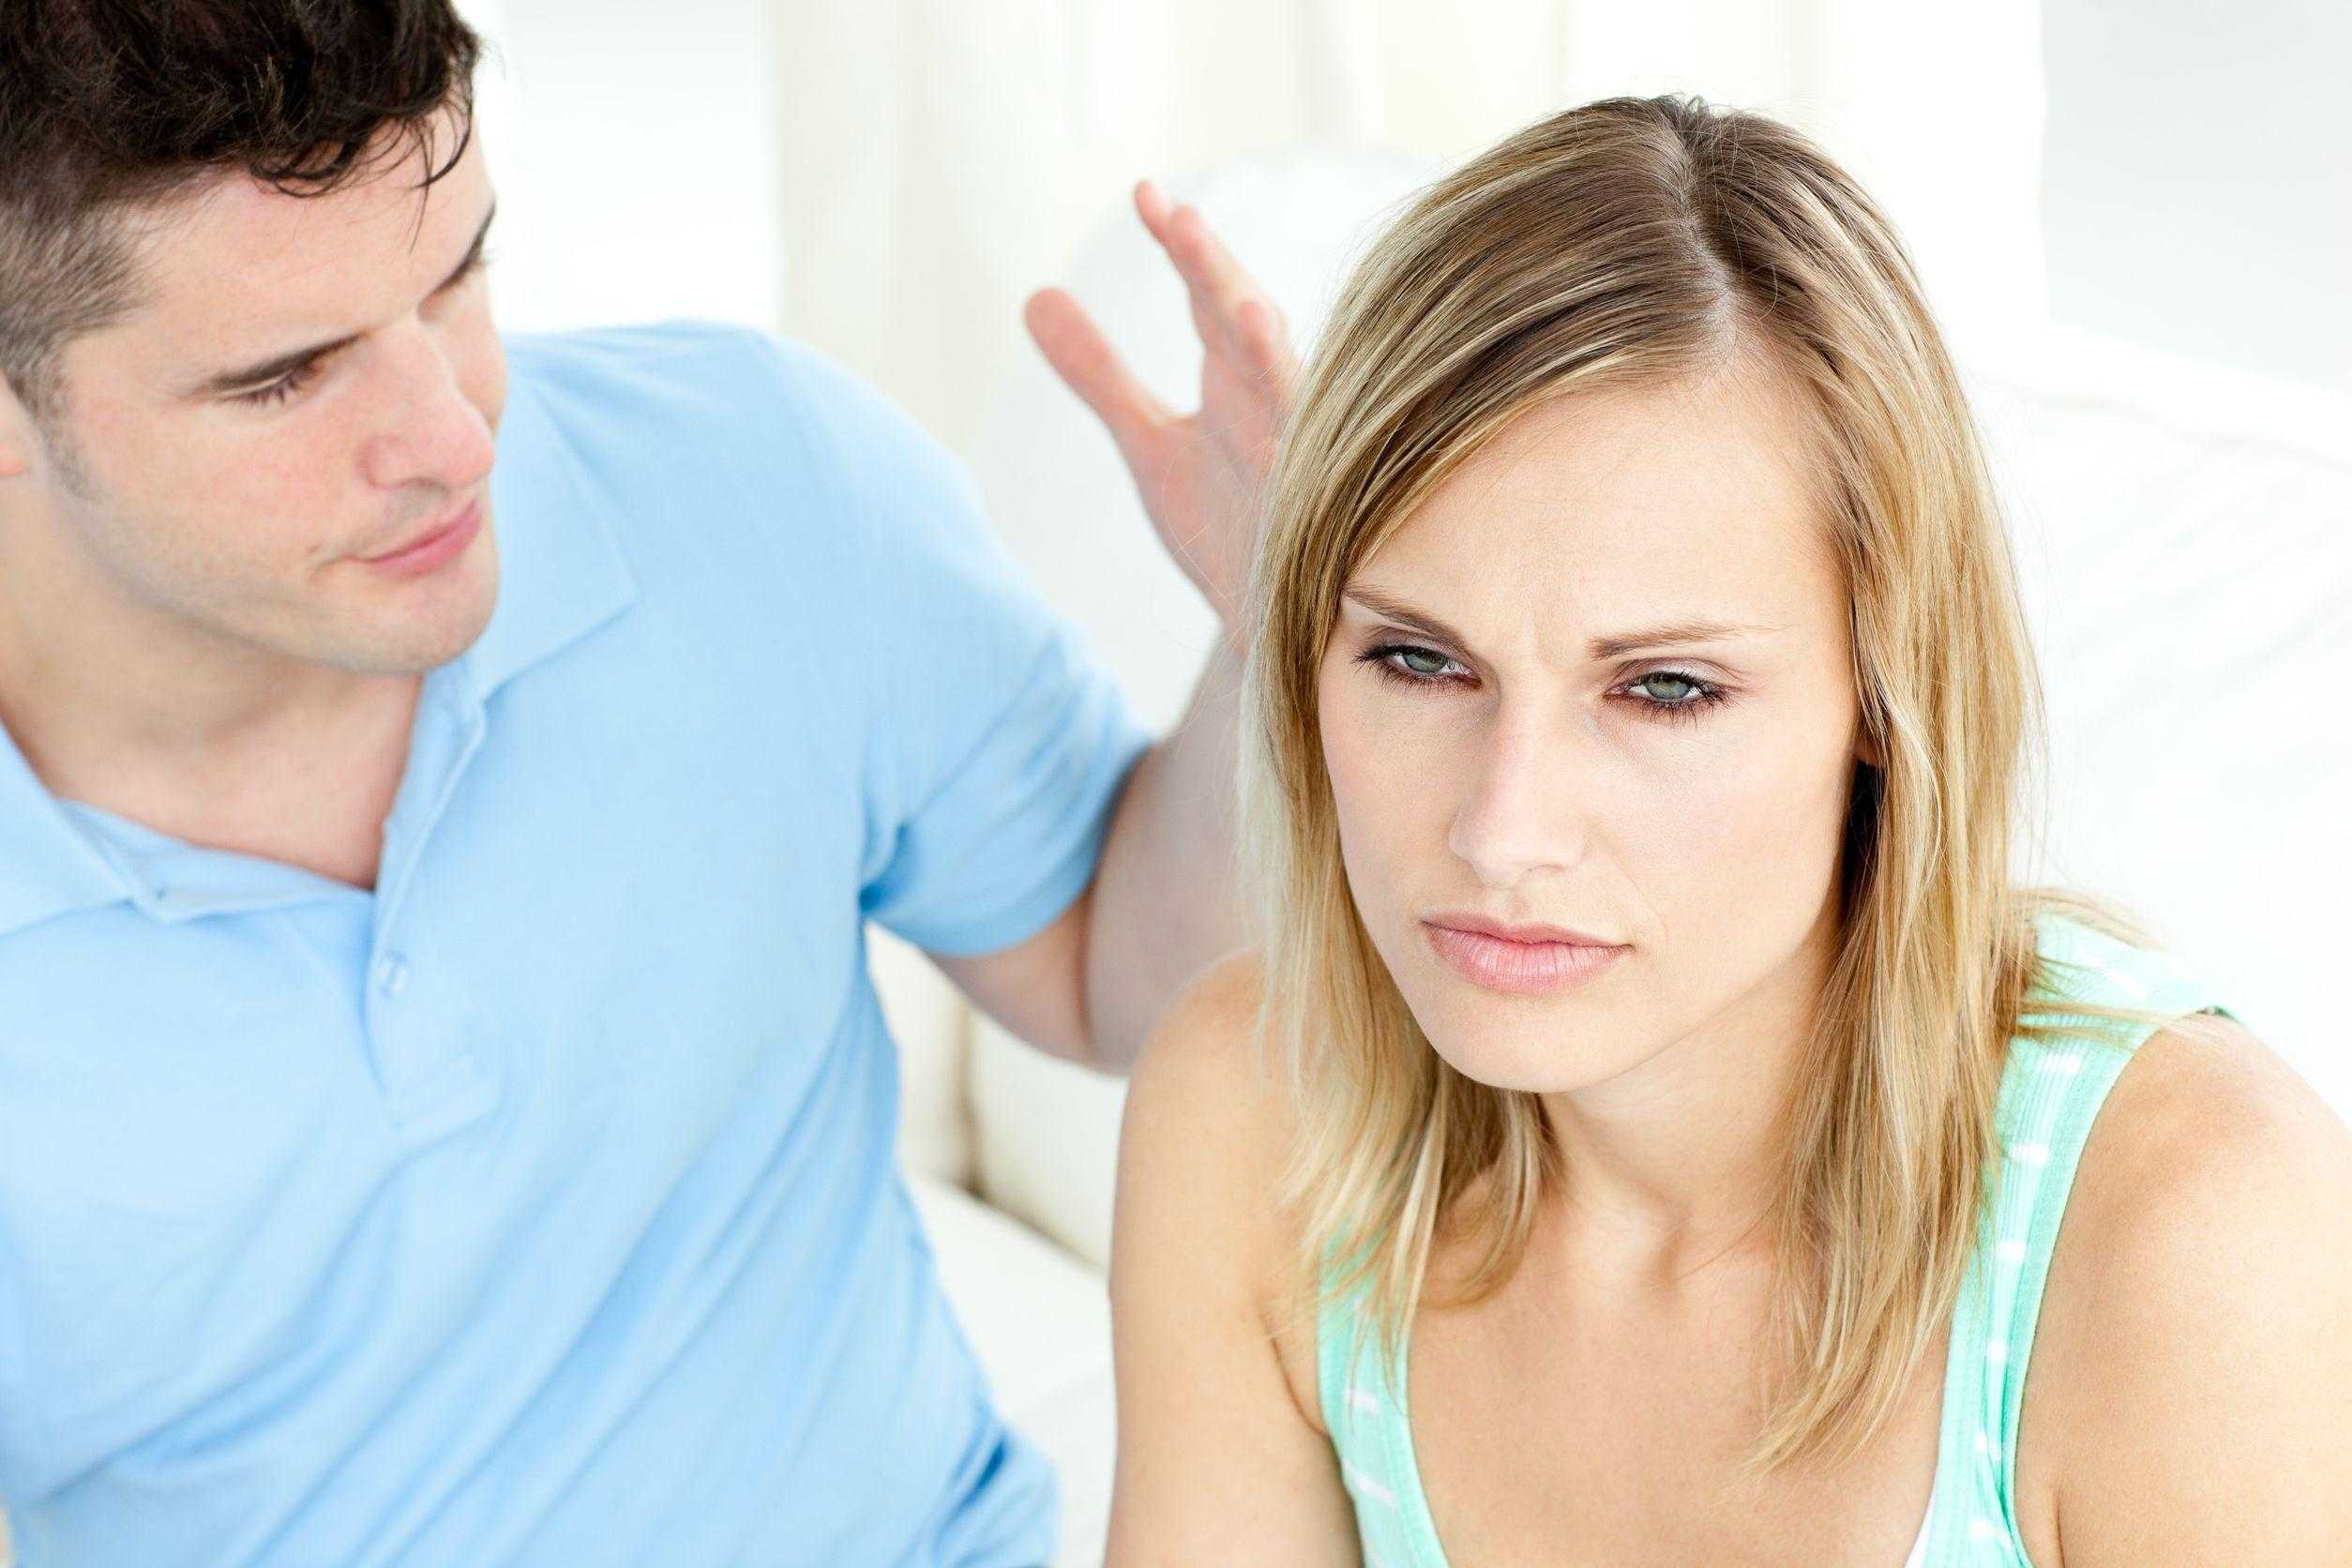 Разлад в семье – не повод расставаться. советы, как наладить отношения с мужем